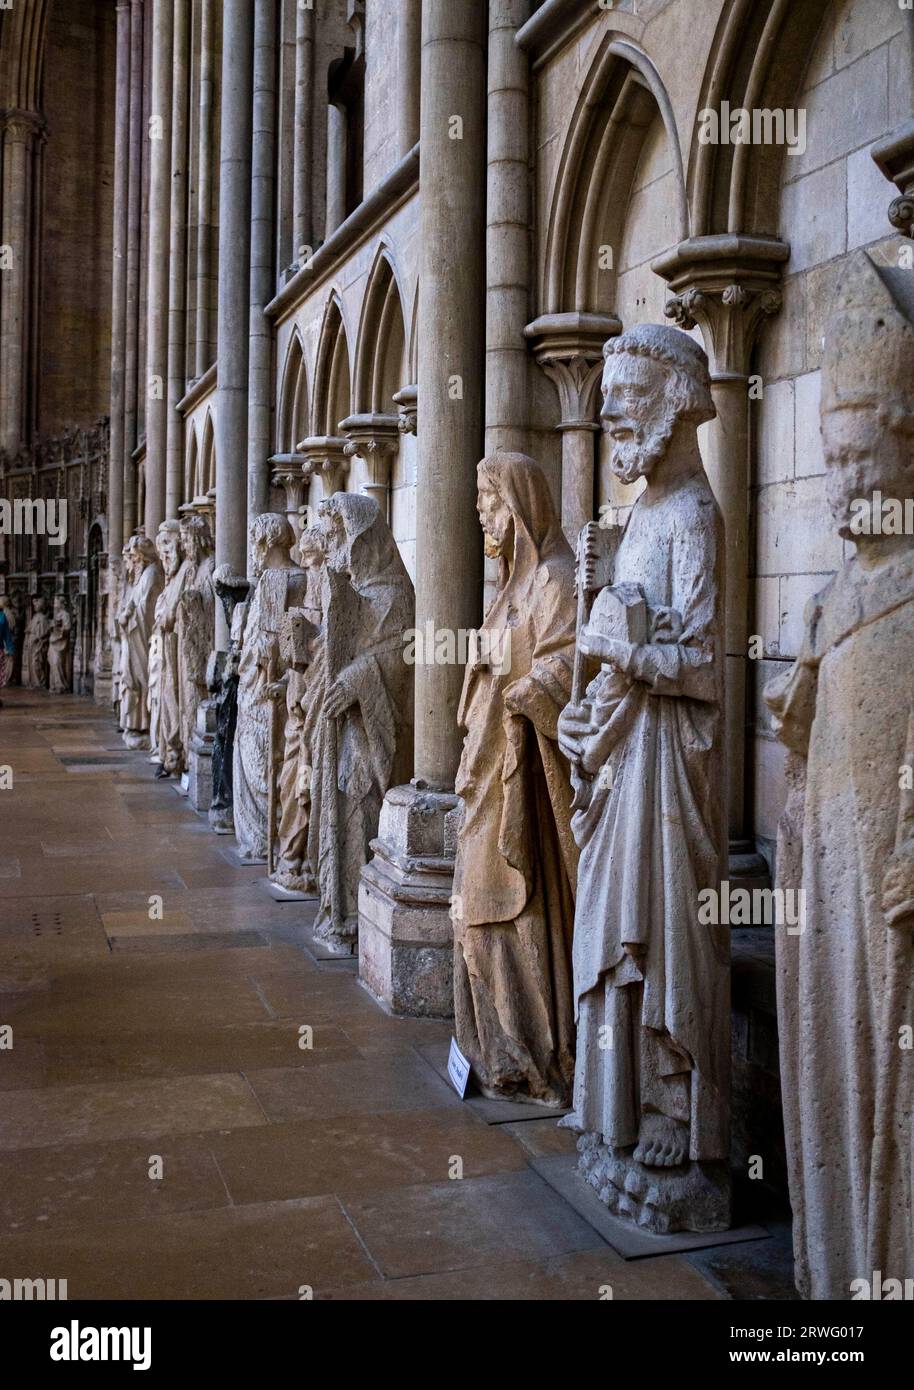 Rouen Normandie Frankreich - Statuen der Heiligen in der Kathedrale von Rouen Rouen ist die Hauptstadt der nordfranzösischen Region der Normandie, ist eine Hafenstadt an der Stockfoto